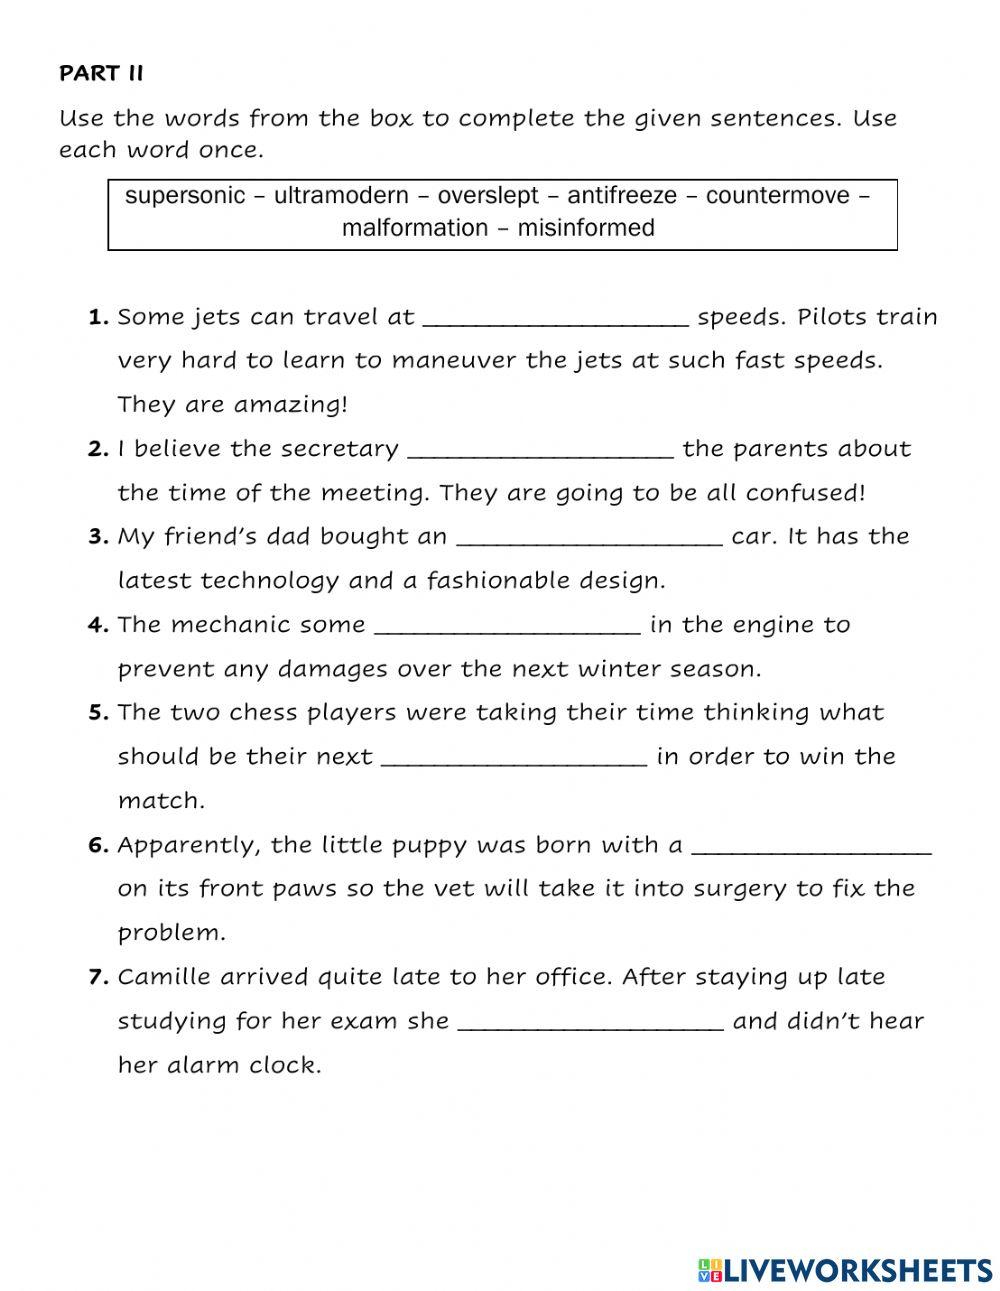 Prefixes worksheet 1